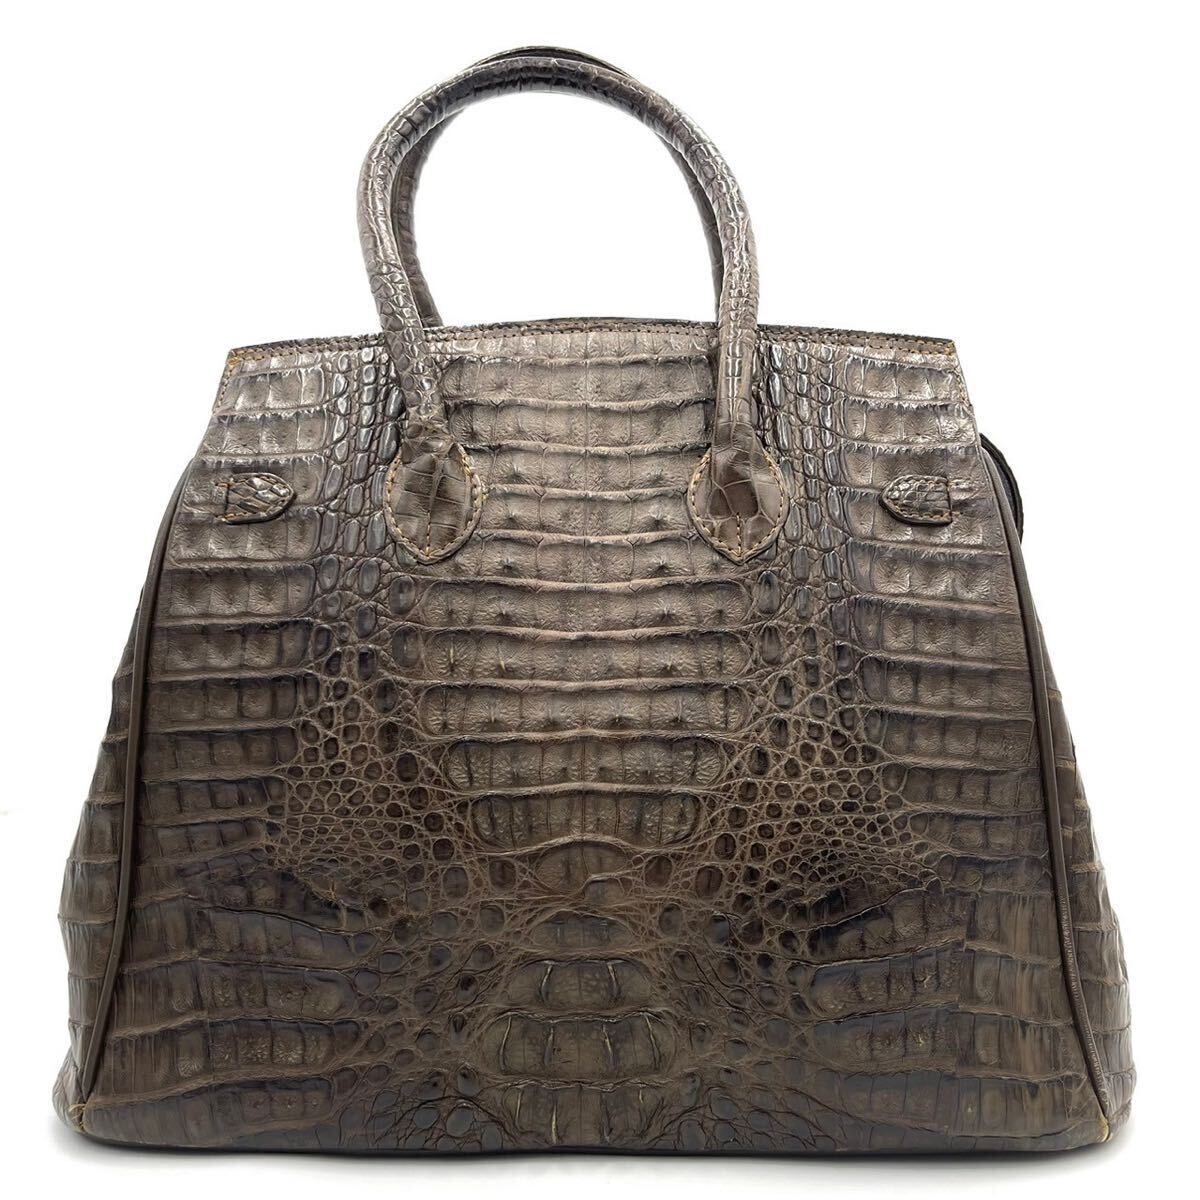  превосходный товар / высококлассный *wani кожа крокодил Crown ручная сумочка ручная сумка сумка настоящий кожа экзотический Gold металлические принадлежности автономный хаки 